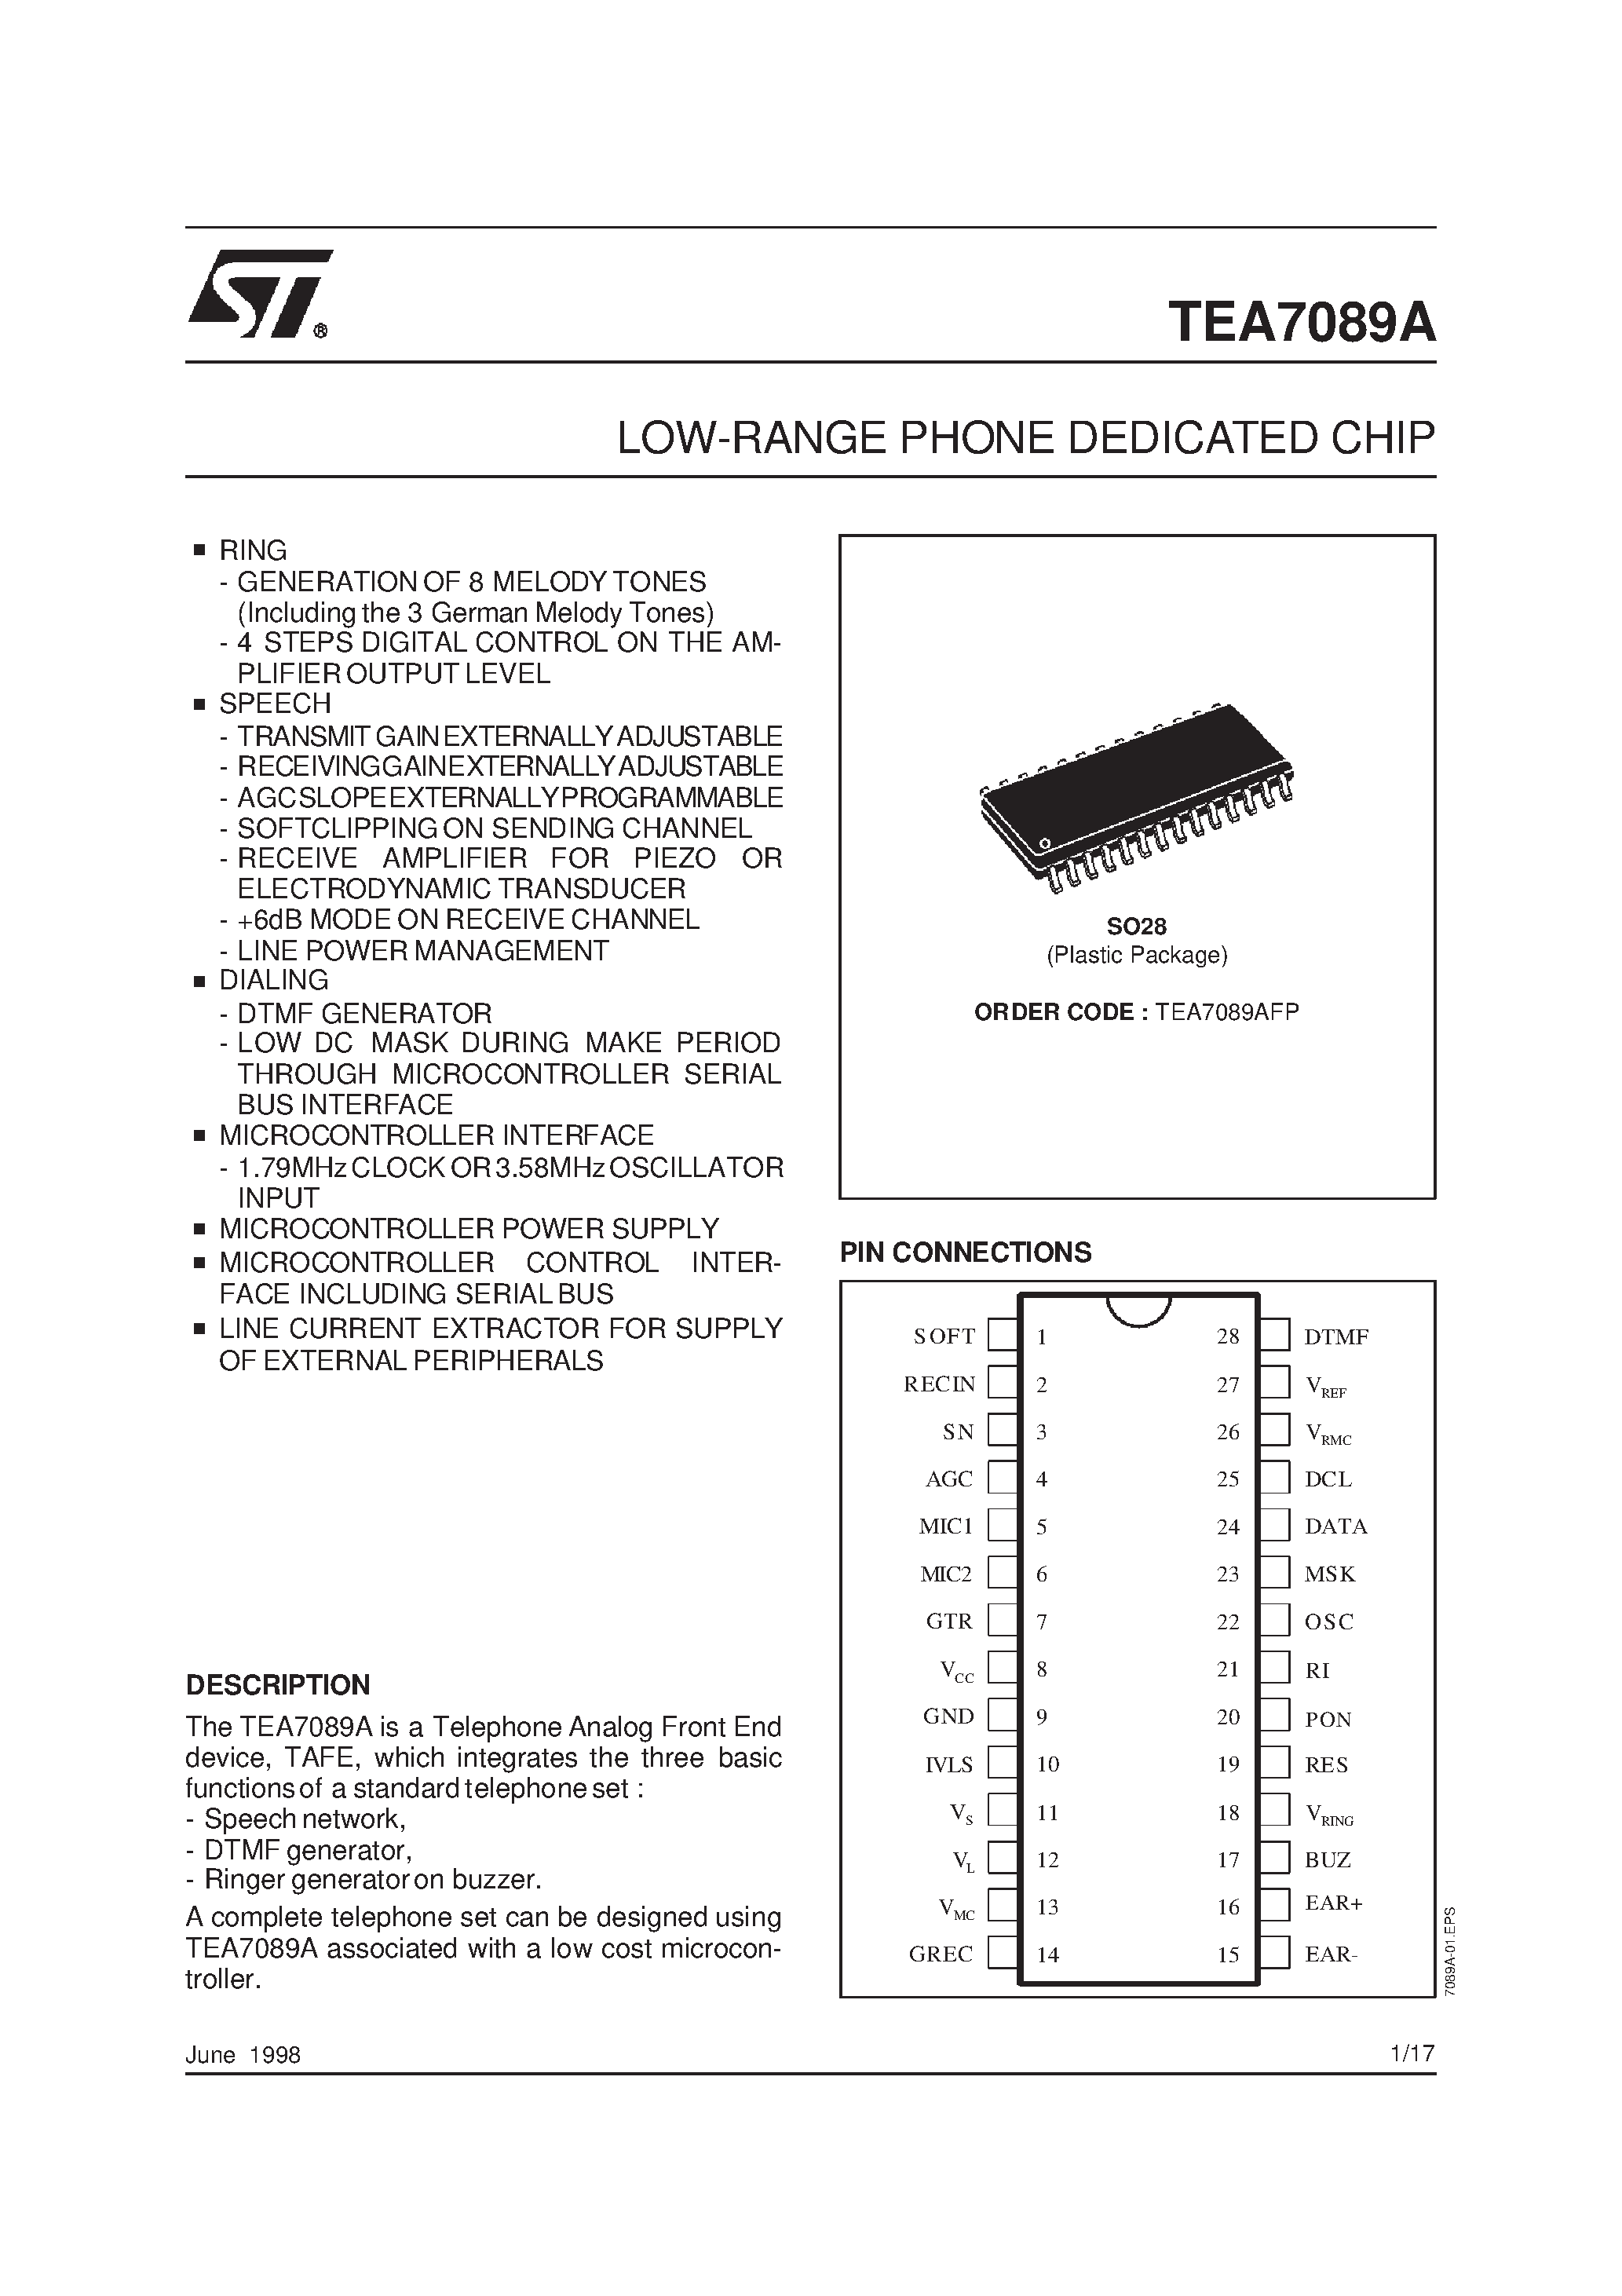 Datasheet TEA7089AFP - LOW-RANGE PHONE DEDICATED CHIP page 1